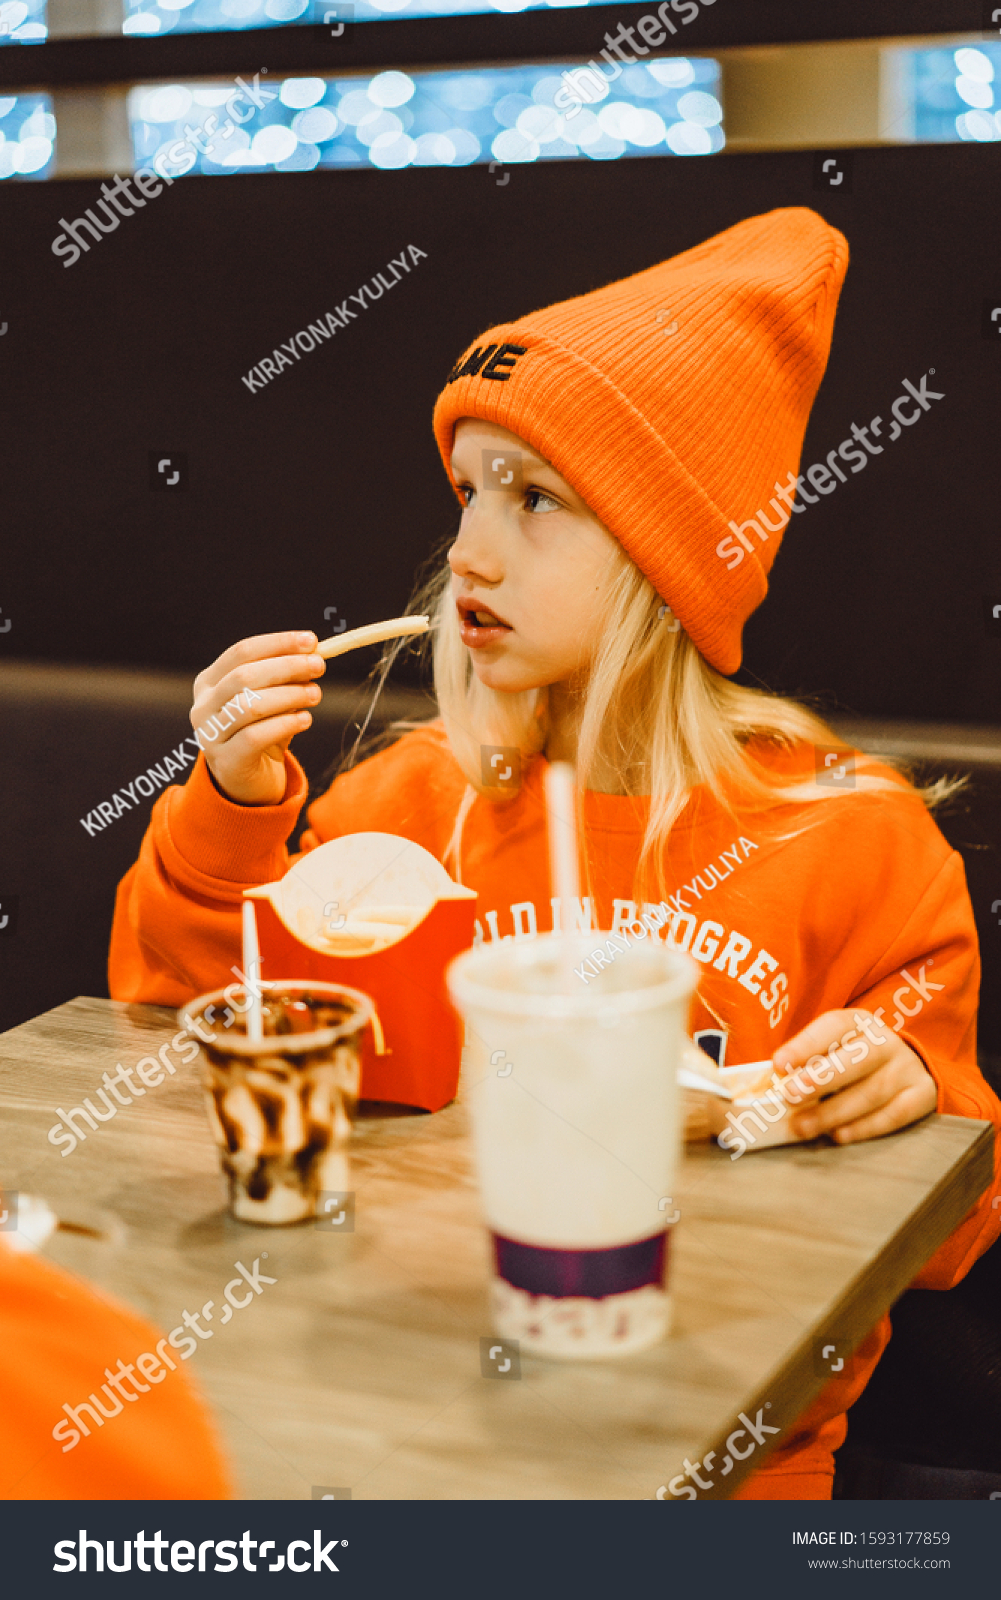 Children Mcdonalds Little Girl Eats French Stock Photo 1593177859 - Shutterstock